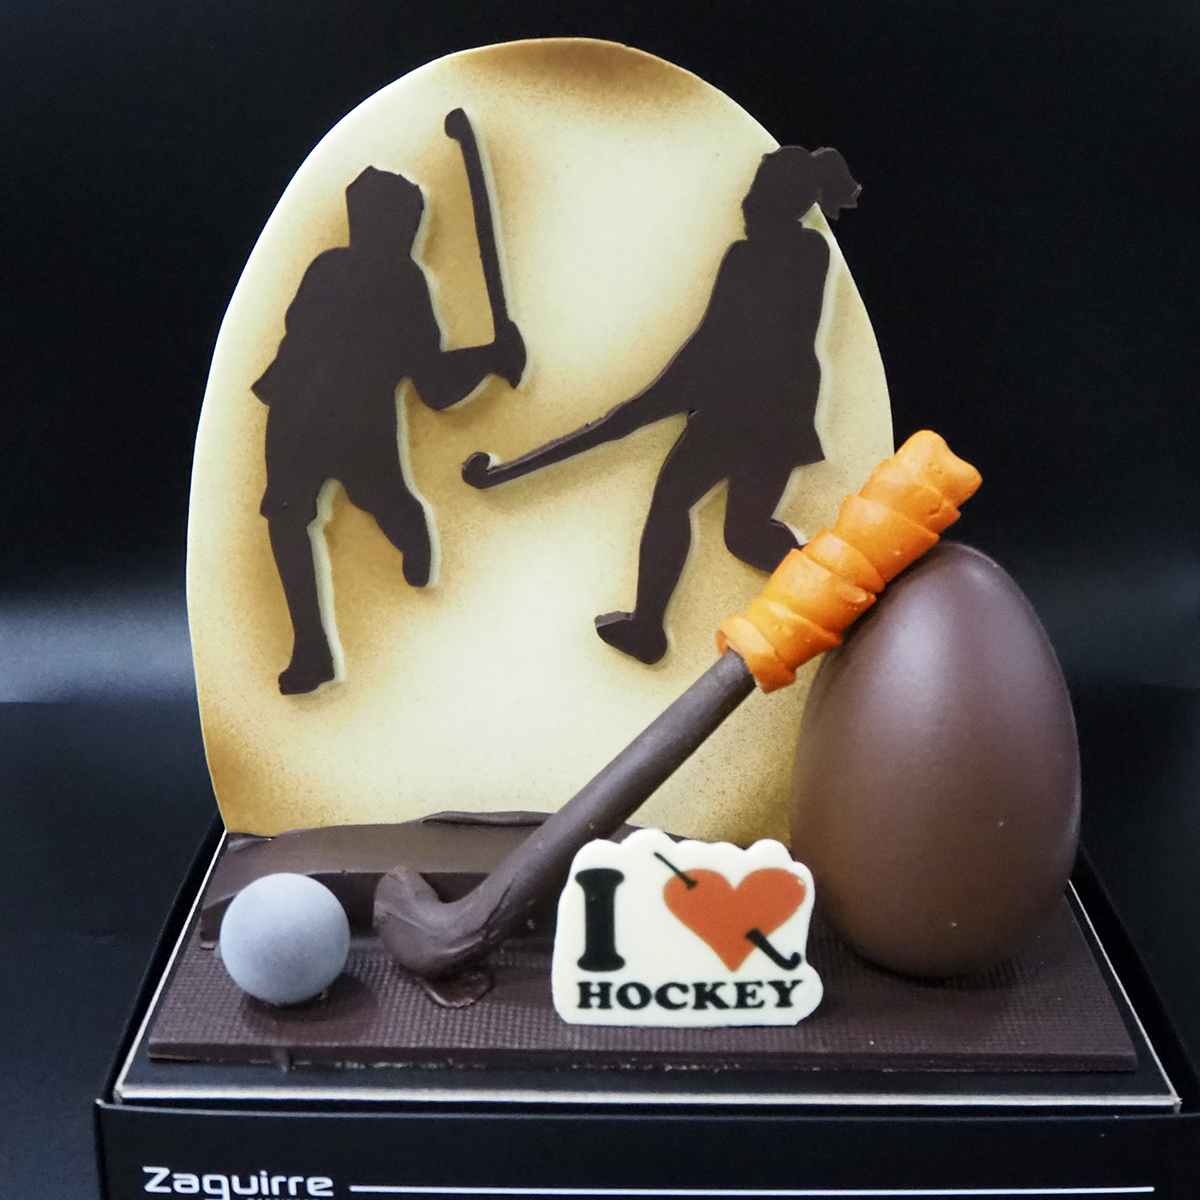 Mona de Pasqua artesanal elaborada per Zaguirre Pastisser amb jugadors de hockey